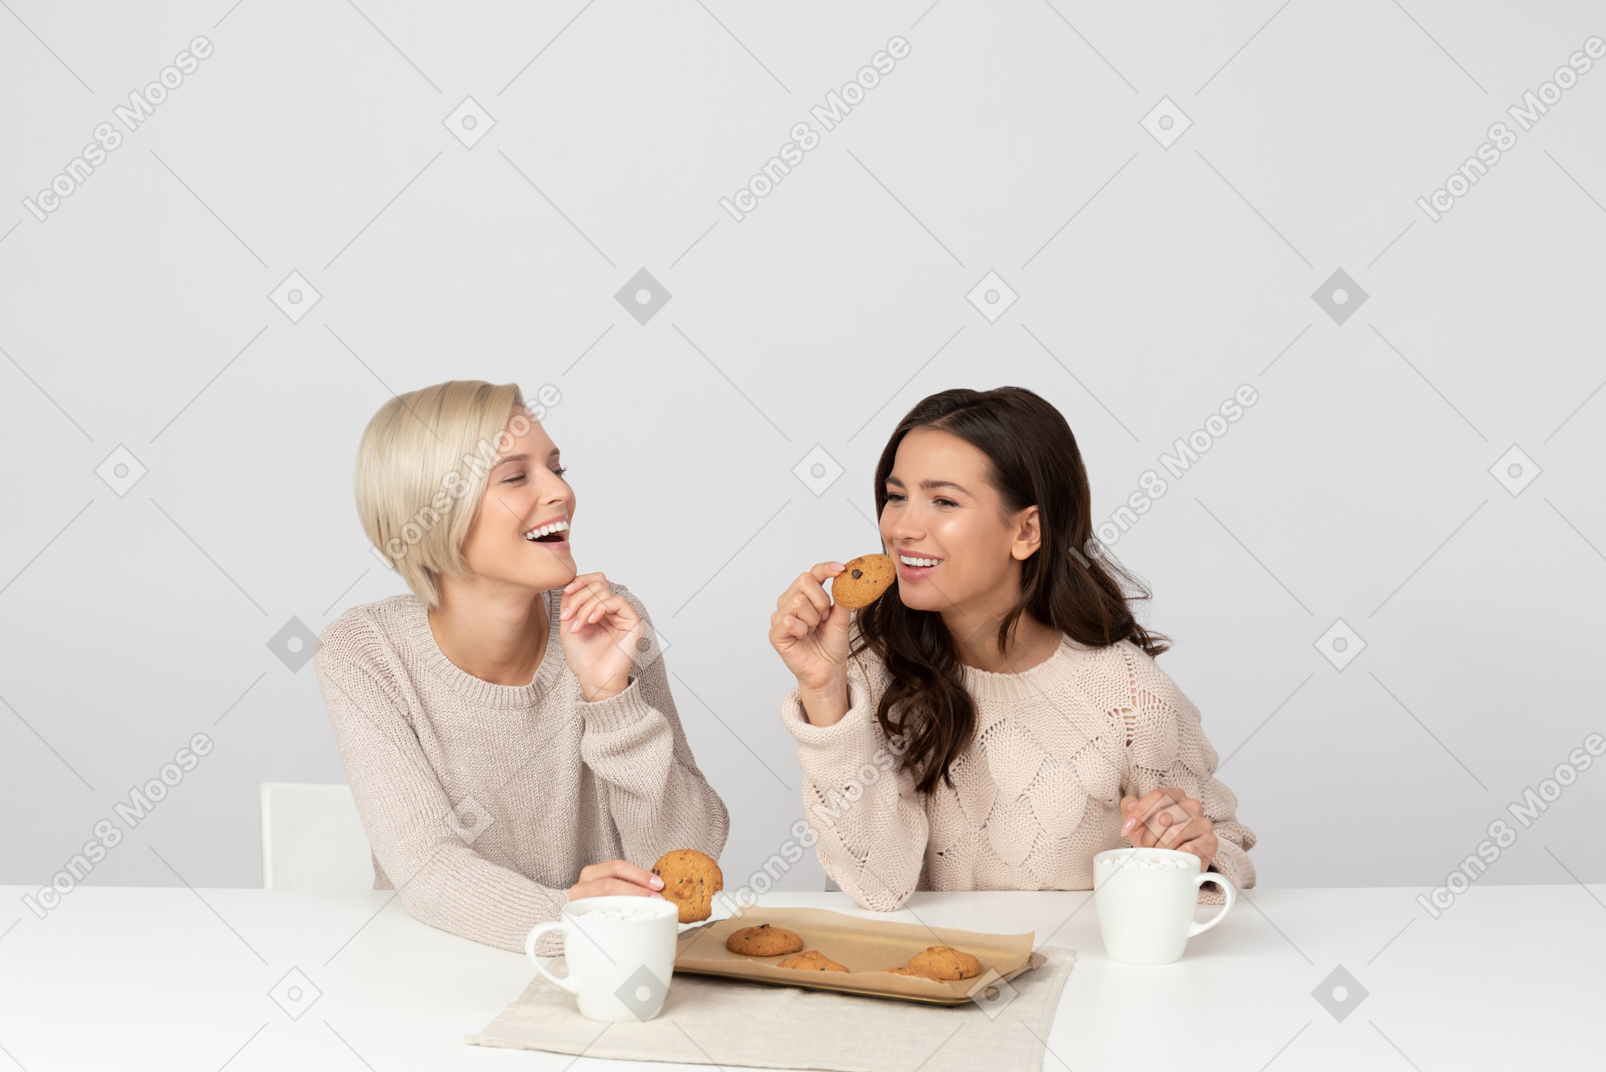 Молодые женщины пьют кофе с печеньем и смеются